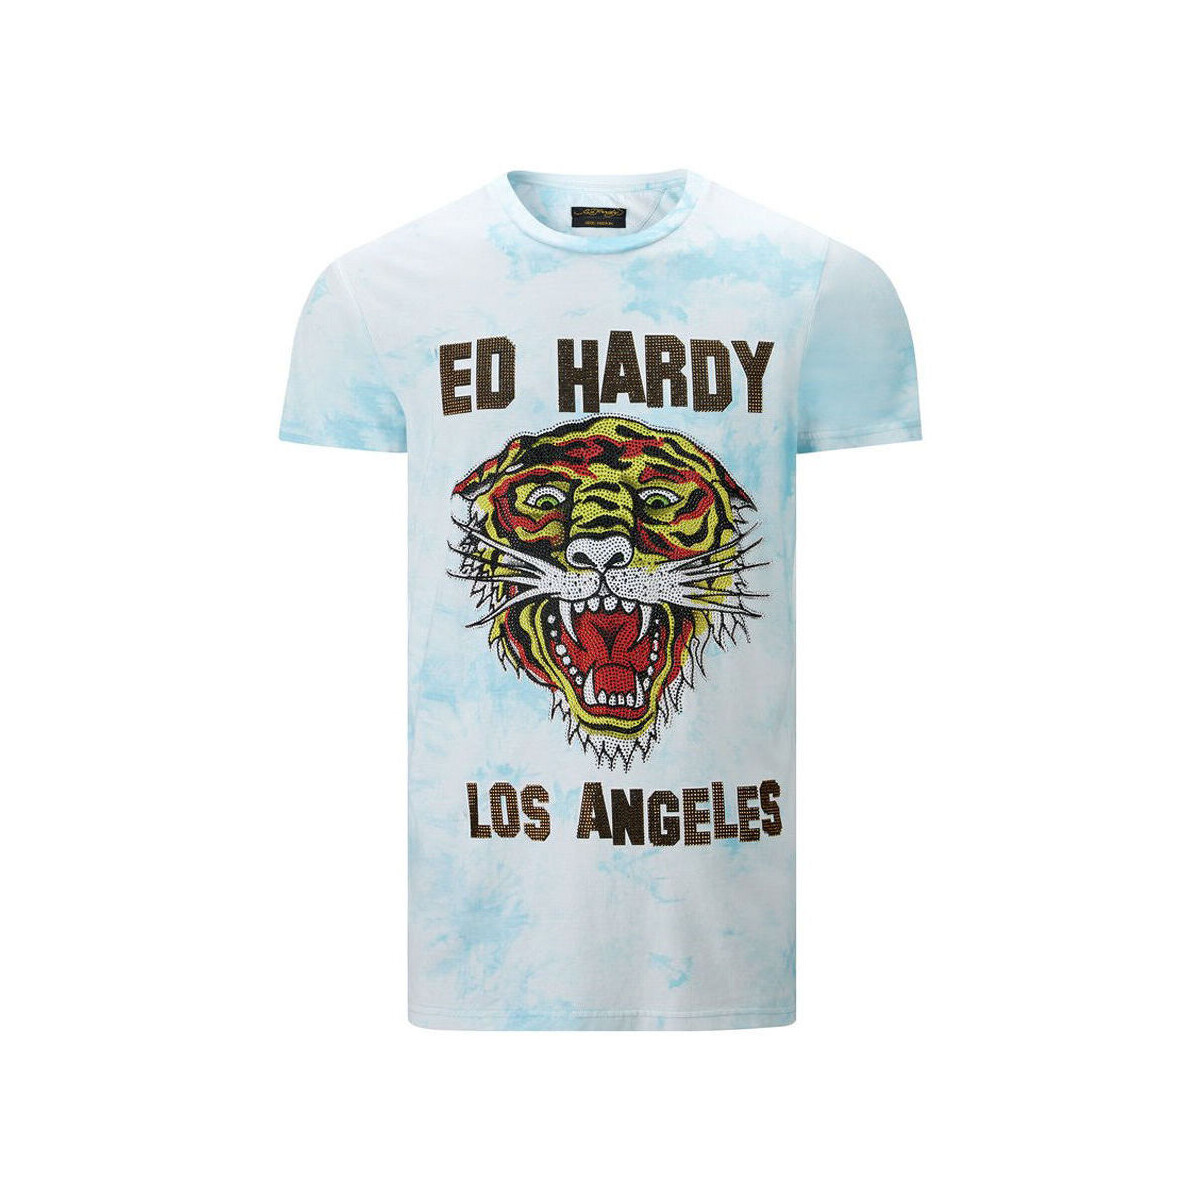 Oblačila Moški Majice s kratkimi rokavi Ed Hardy Los tigre t-shirt turquesa Modra